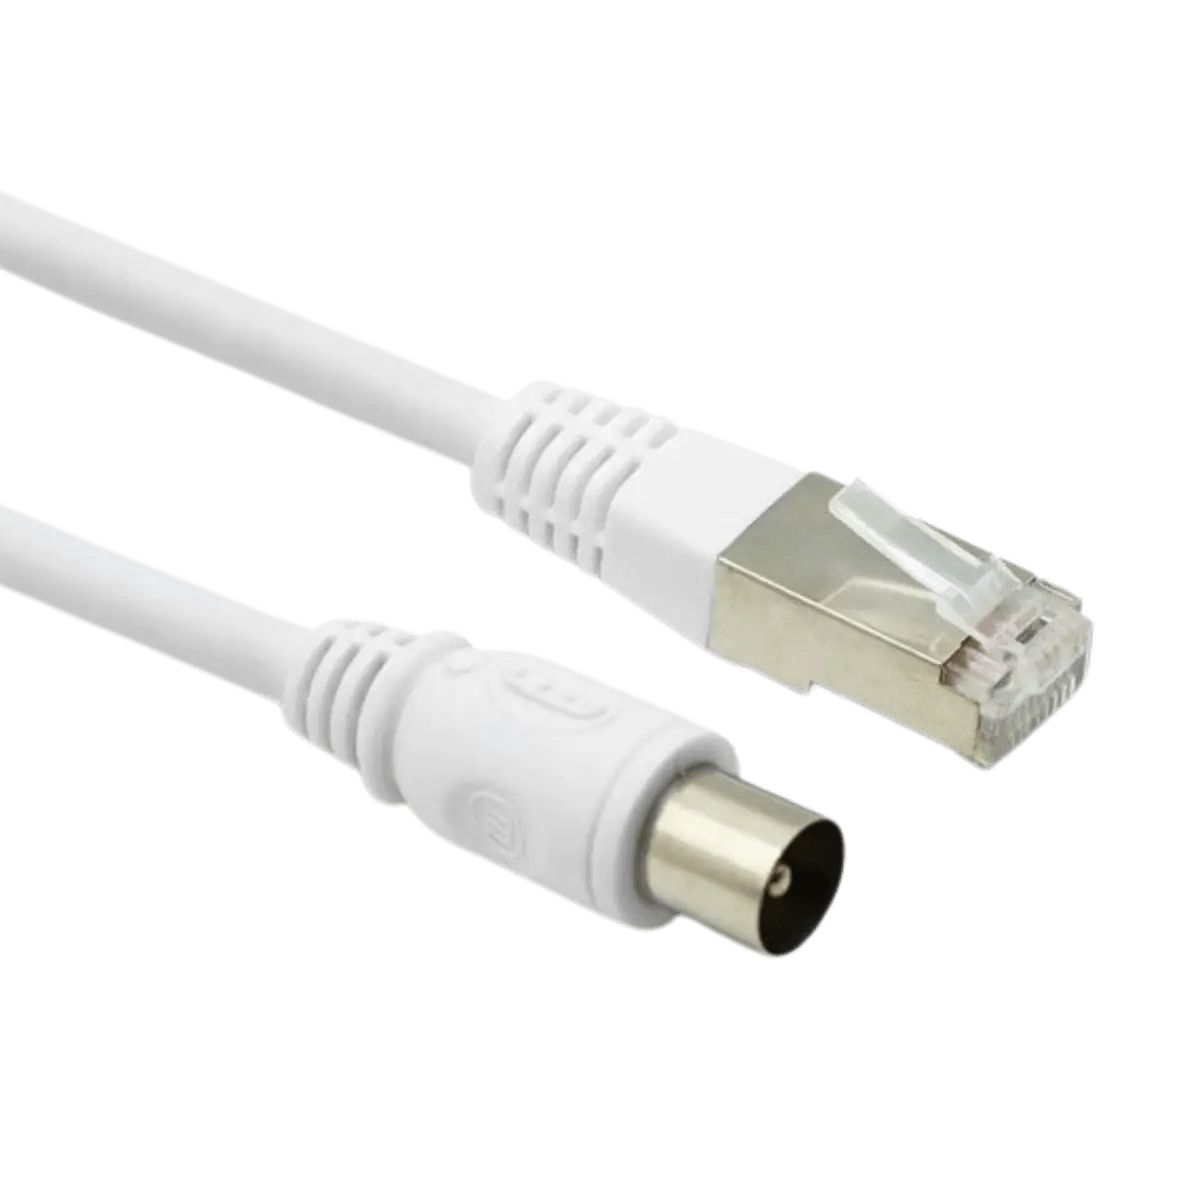 Câble coaxial - Supplémentaire : signal TV et internet, Connexion 1 : IEC  mâle, Connexion 2 : RJ45 mâle, Blindage : double, Plaqué or : Non.